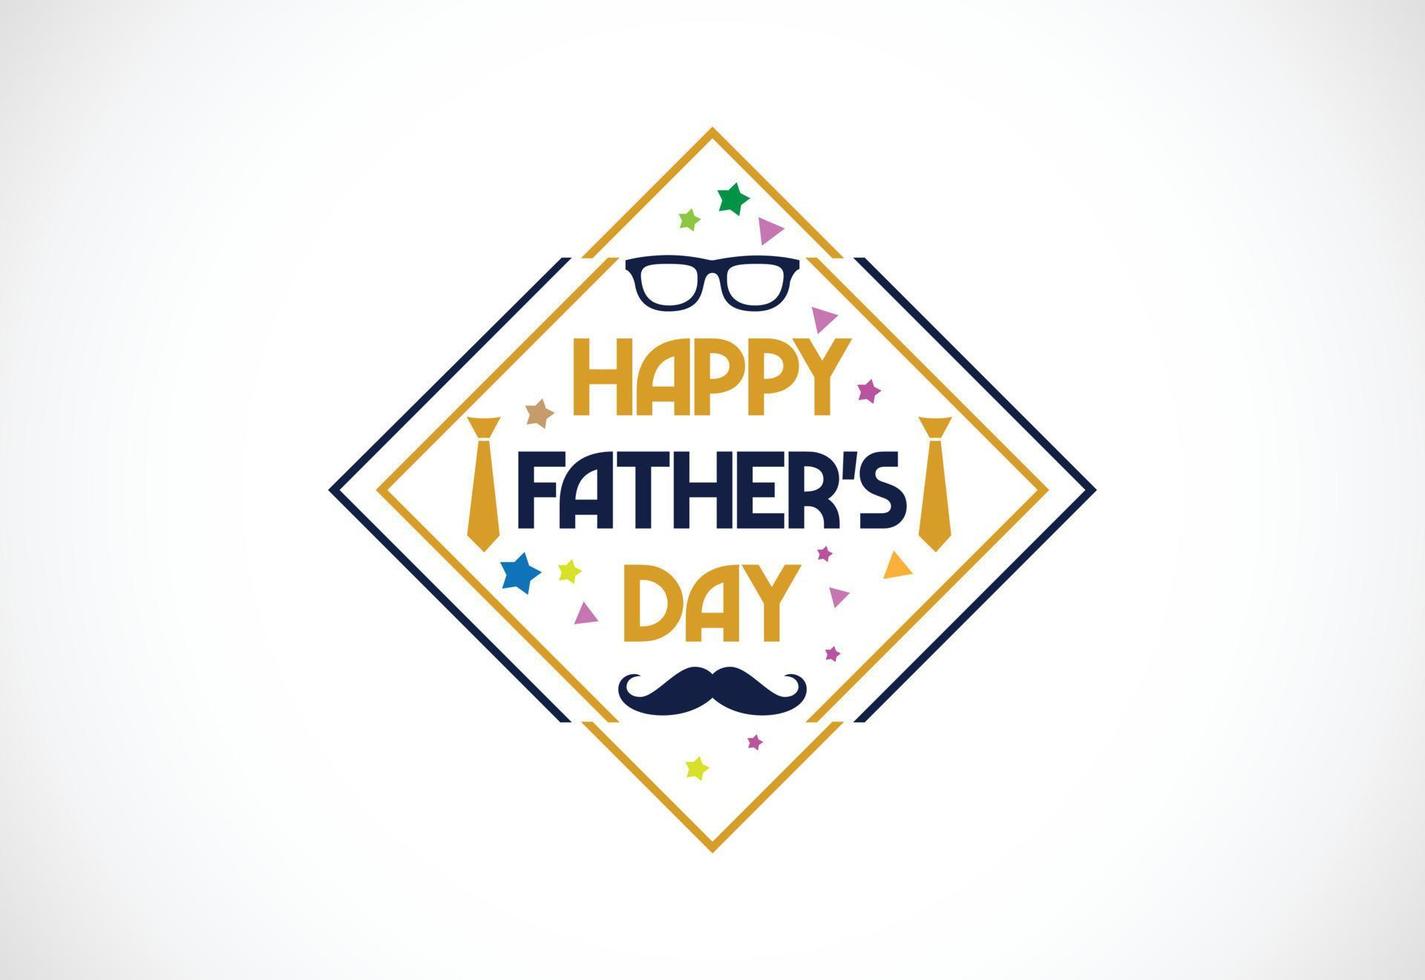 modèle d'affiche ou de bannière de fête des pères heureux, conception d'illustration vectorielle d'emblème de lettres de fête des pères heureux vecteur